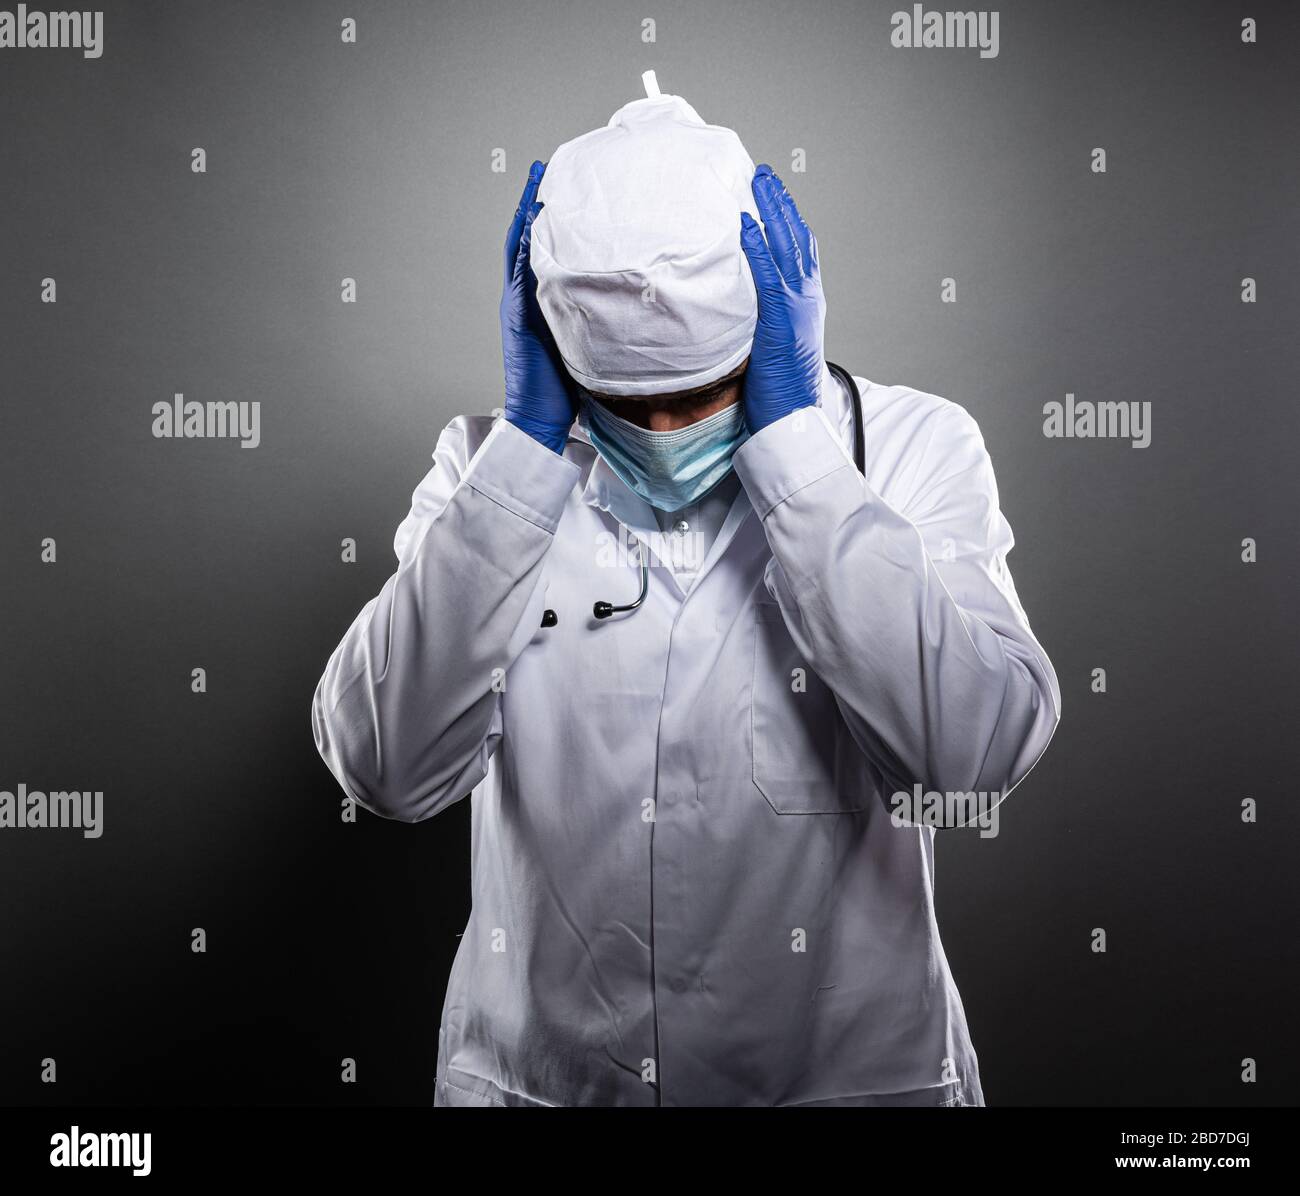 Medico stanco lavorato in uniforme bianca e maschera medica. Foto Stock